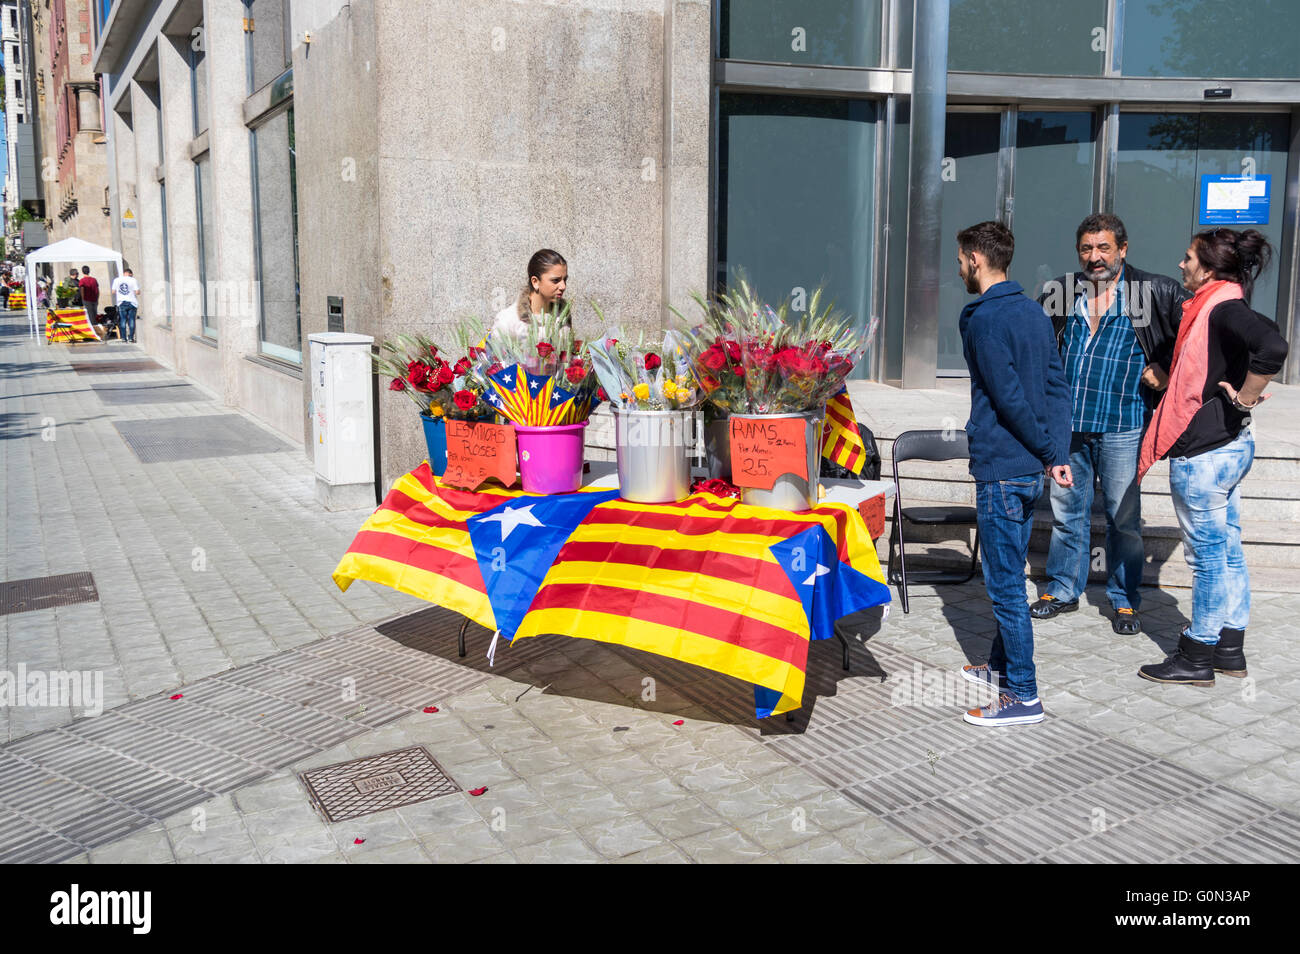 Petit stand de vente rose décorée de drapeaux sur l'Estelada Catalan Diada de Sant Jordi (Saint George's Day), le 23 avril, Barcelone. Banque D'Images